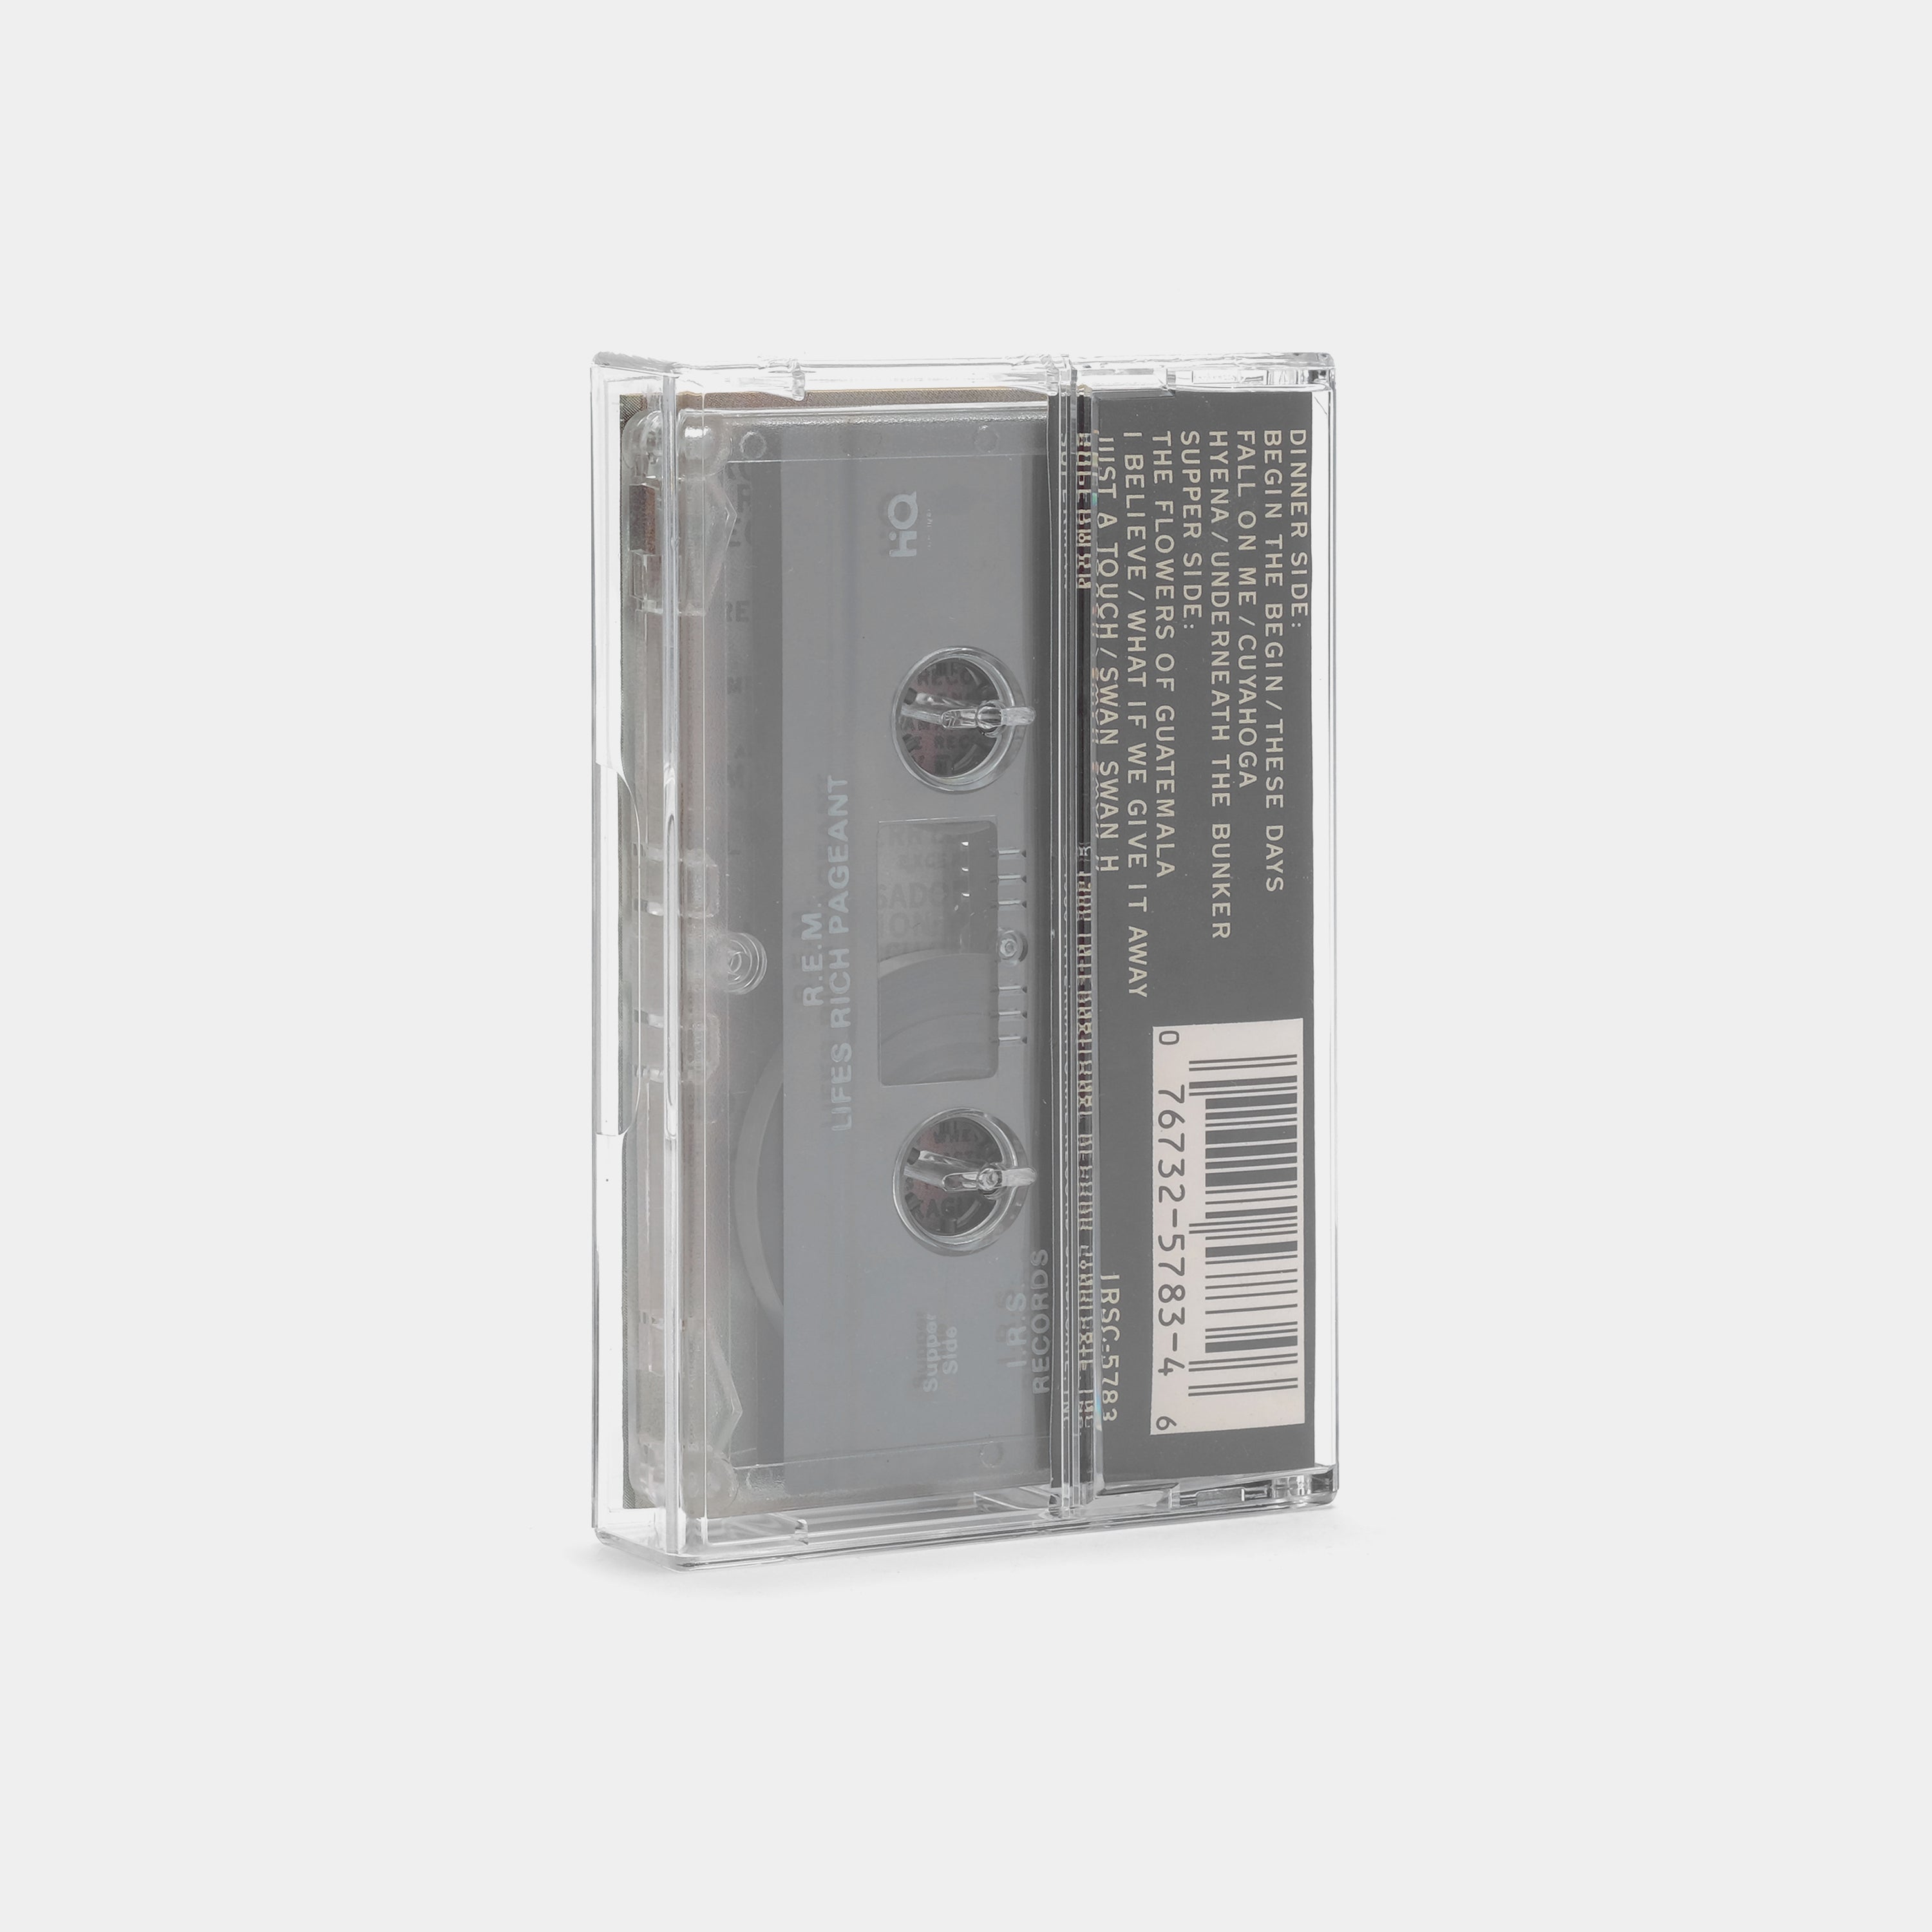 R.E.M. - Lifes Rich Pageant Cassette Tape